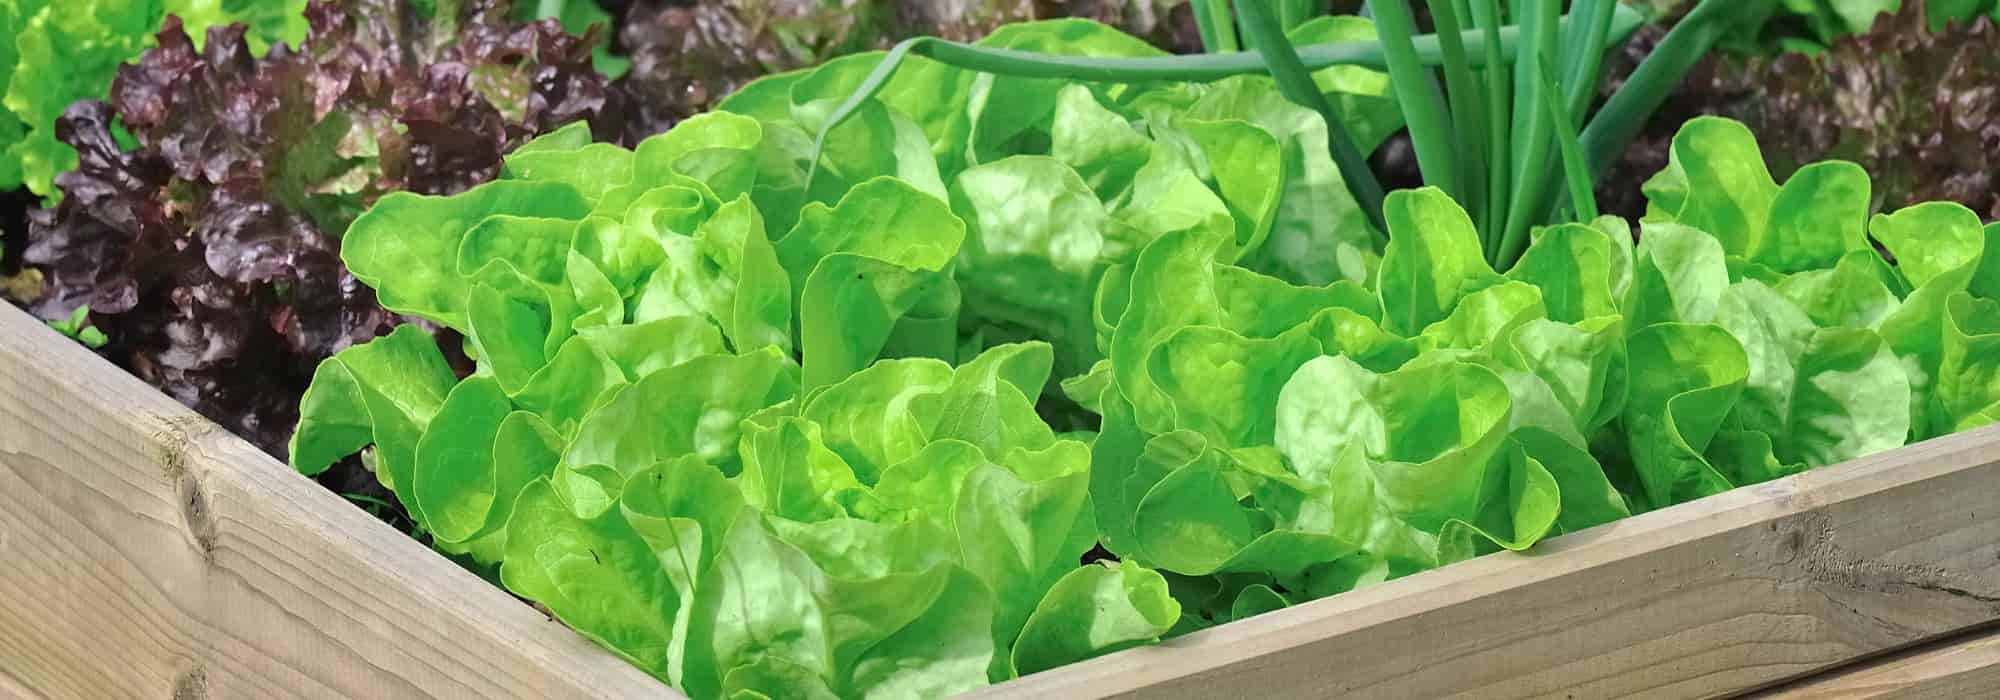 Les 8 meilleures plantes compagnes pour les salades